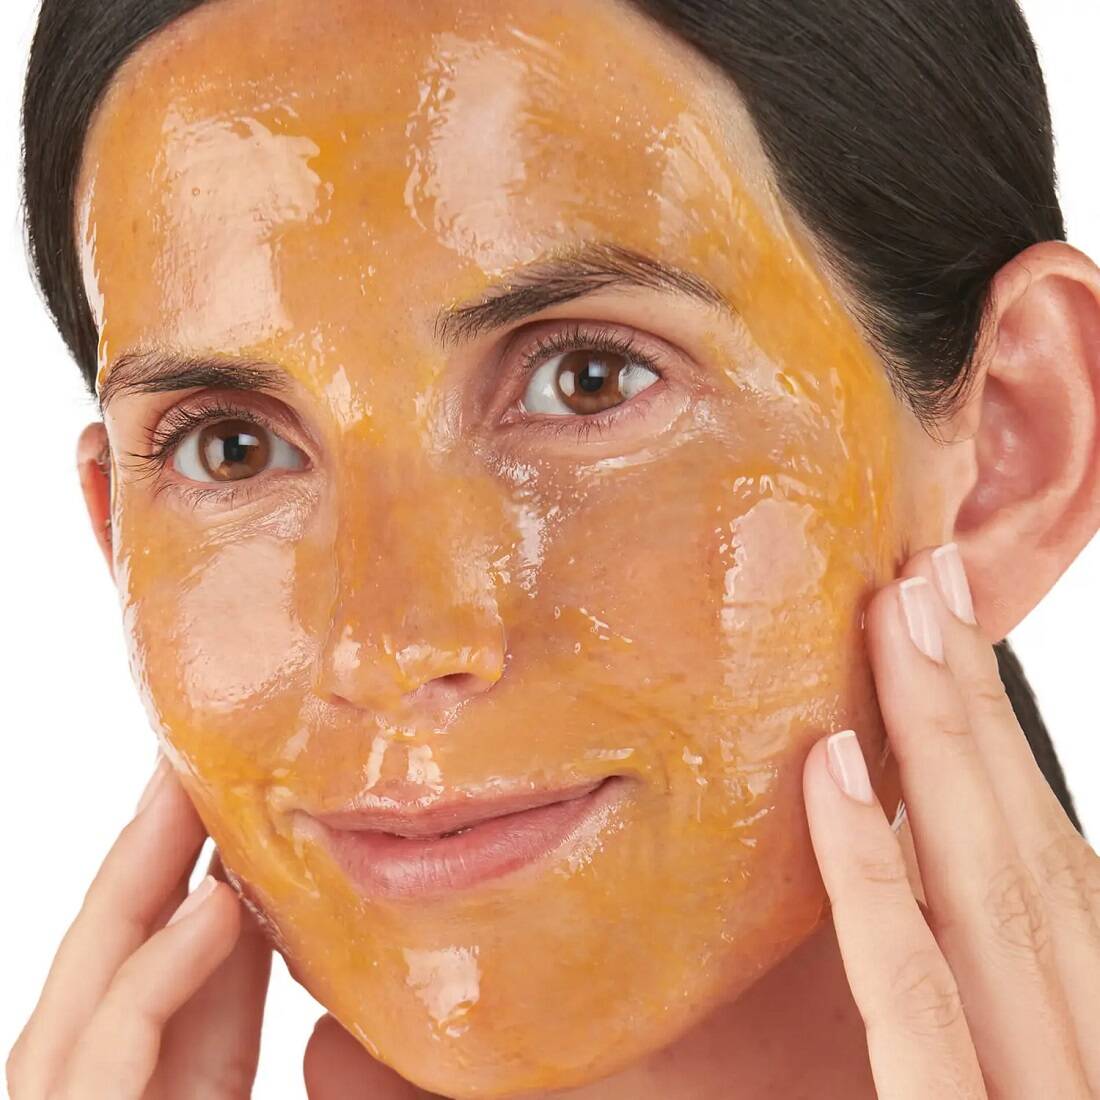 بافت کرم ماسک روشن کننده رسرفیسینگ No7 روی پوست